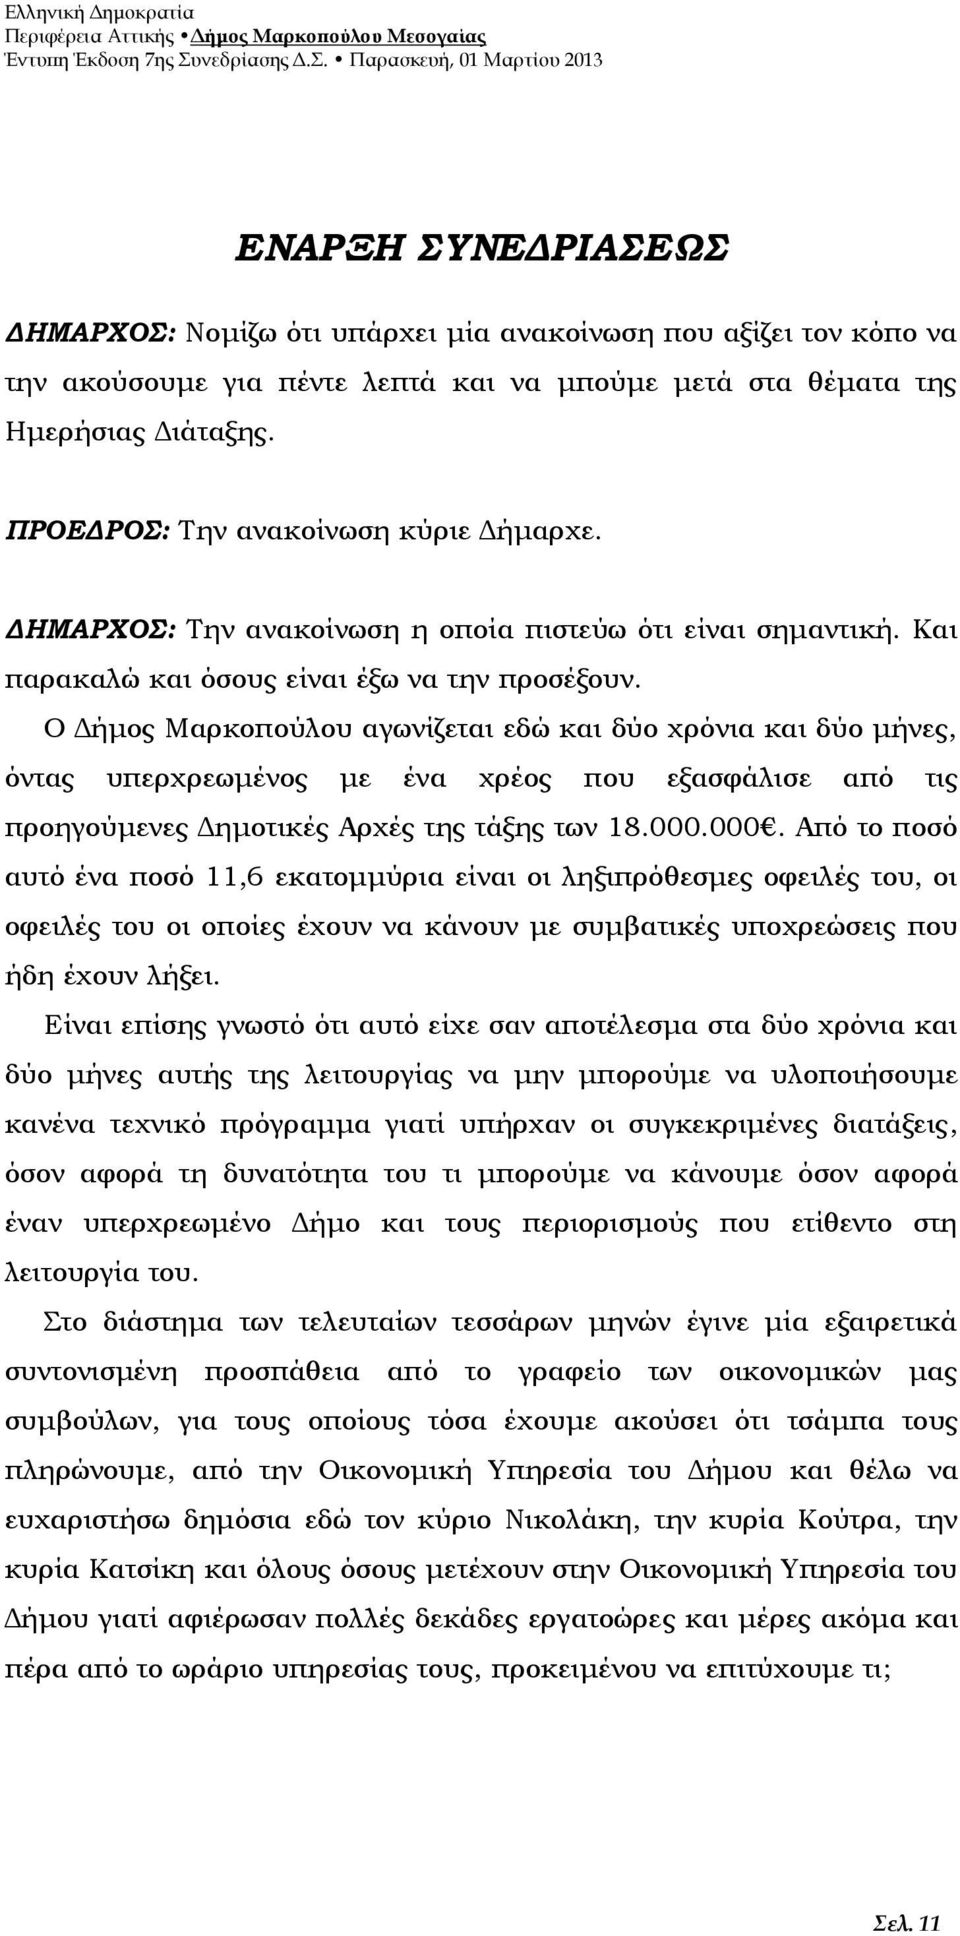 Ο Δήμος Μαρκοπούλου αγωνίζεται εδώ και δύο χρόνια και δύο μήνες, όντας υπερχρεωμένος με ένα χρέος που εξασφάλισε από τις προηγούμενες Δημοτικές Αρχές της τάξης των 18.000.